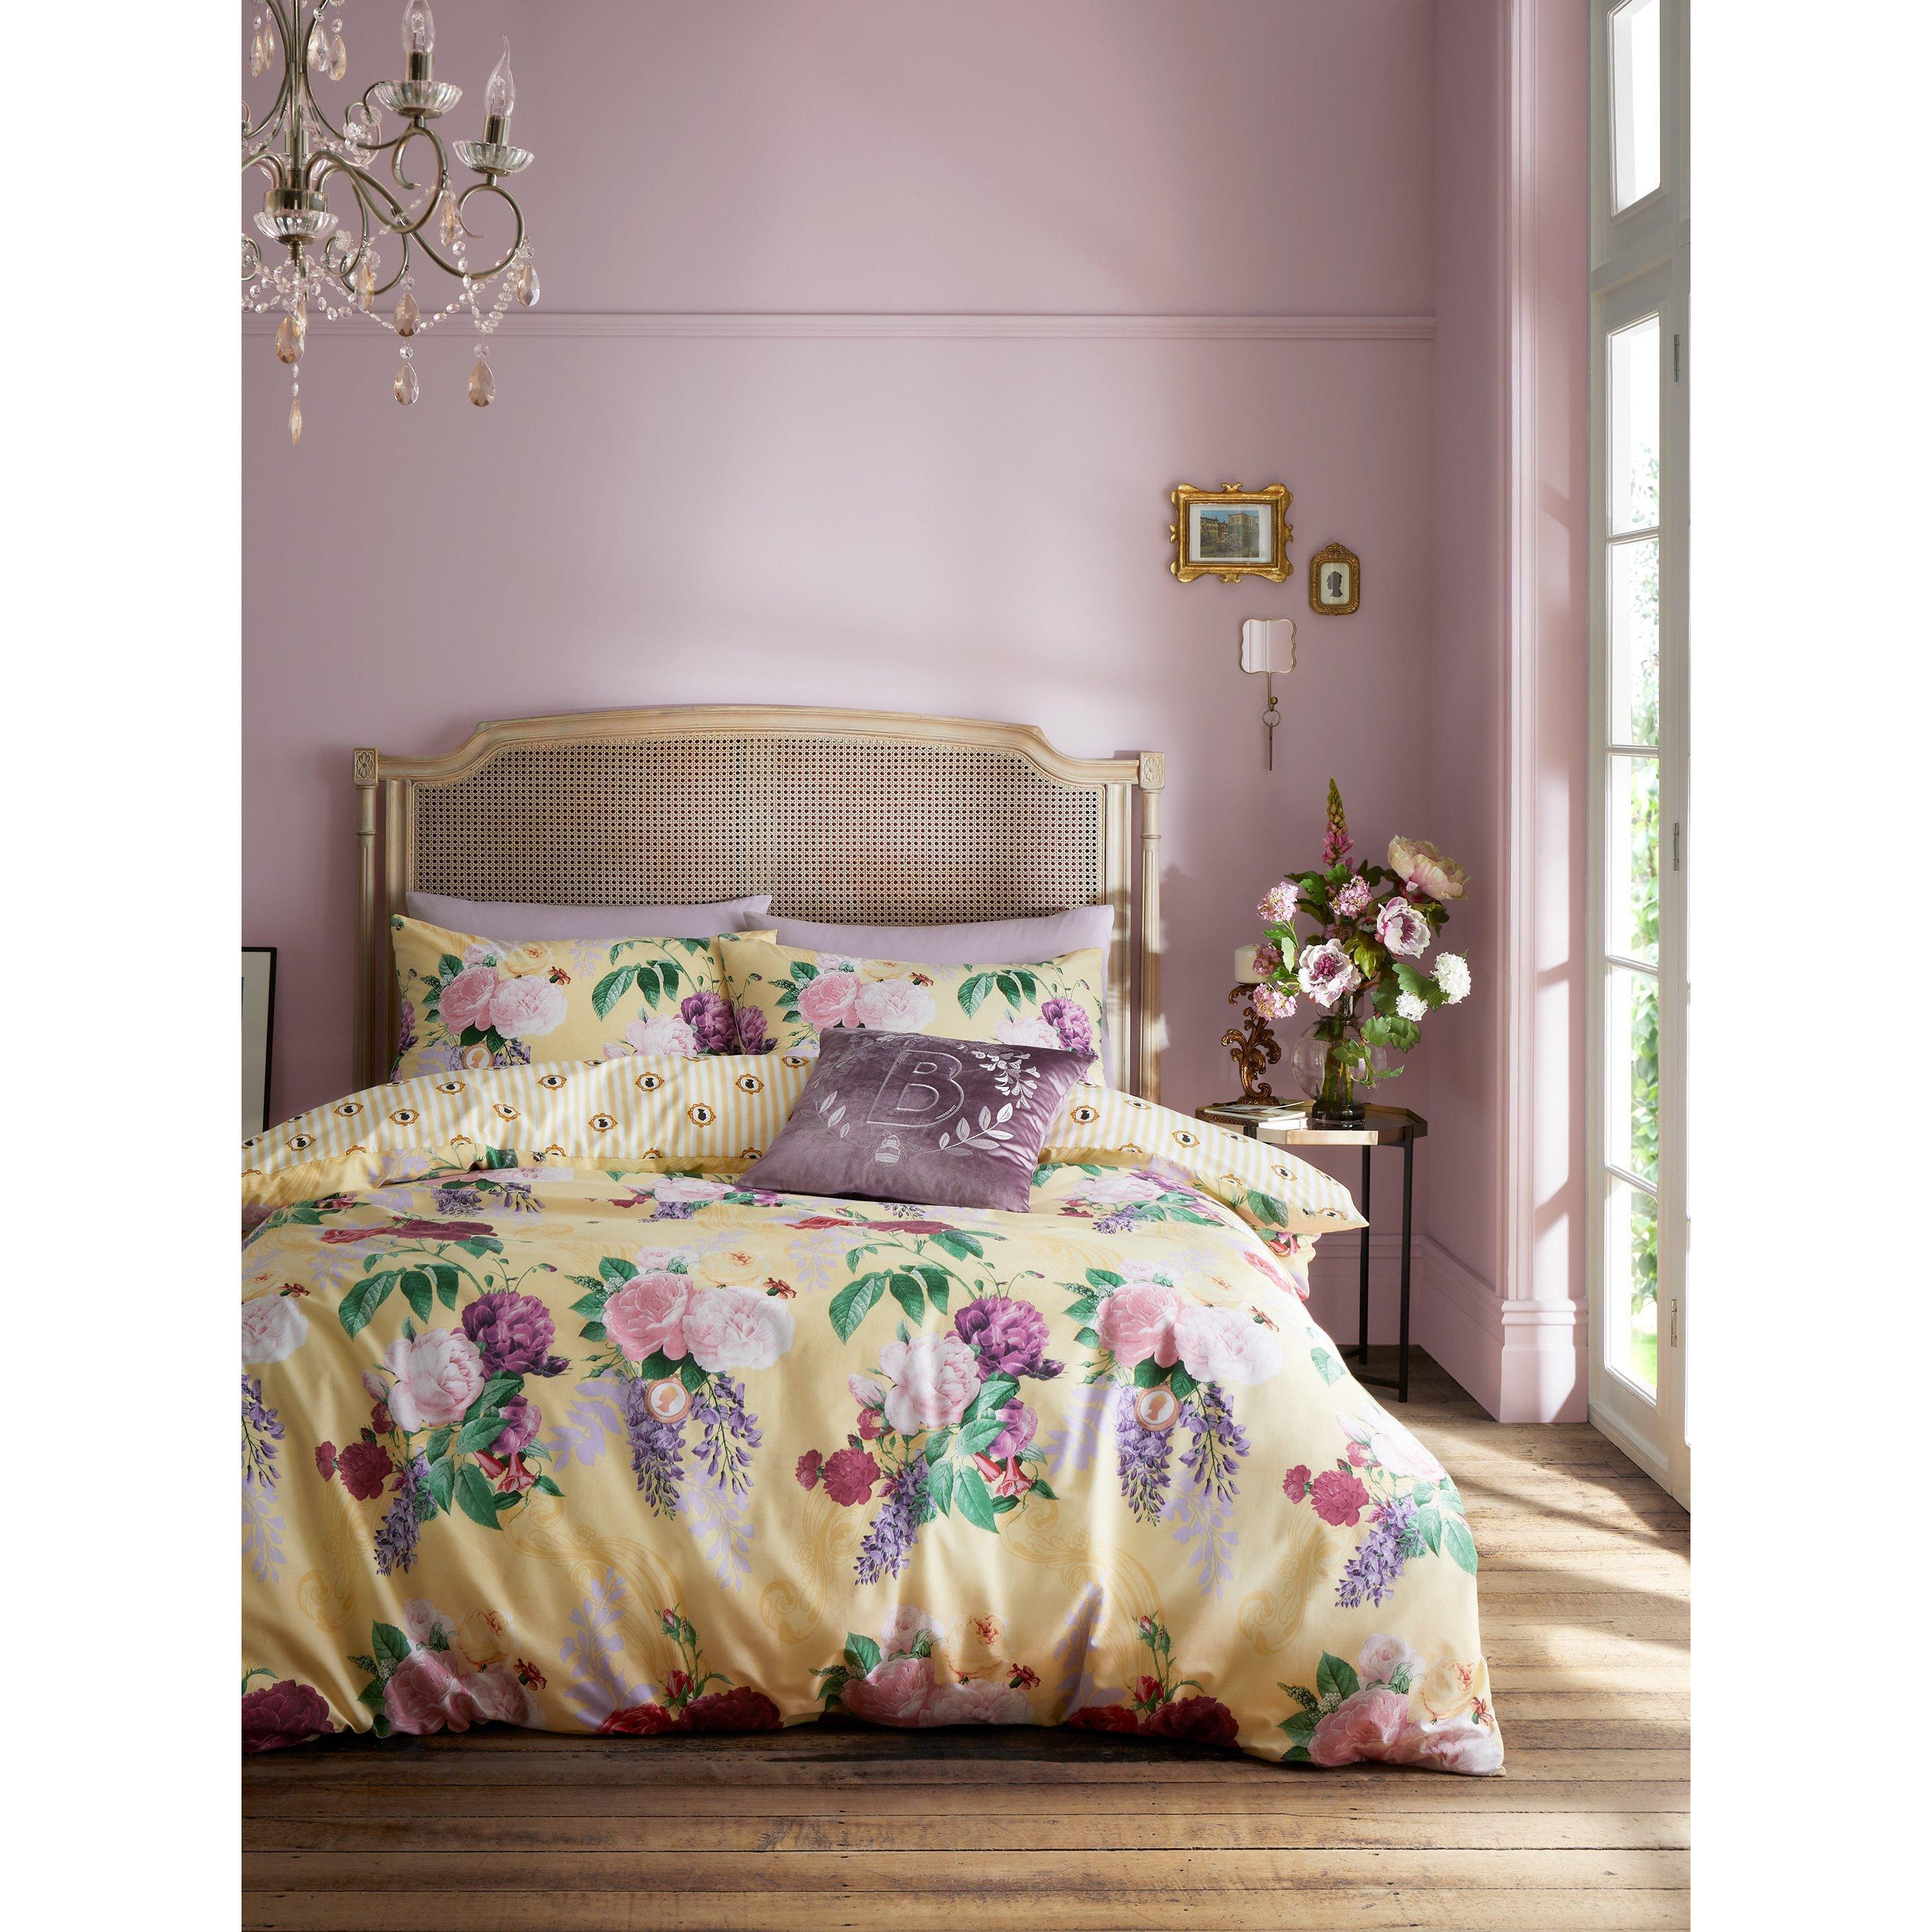 'Wisteria Bouquet' Duvet Cover Set - image 1